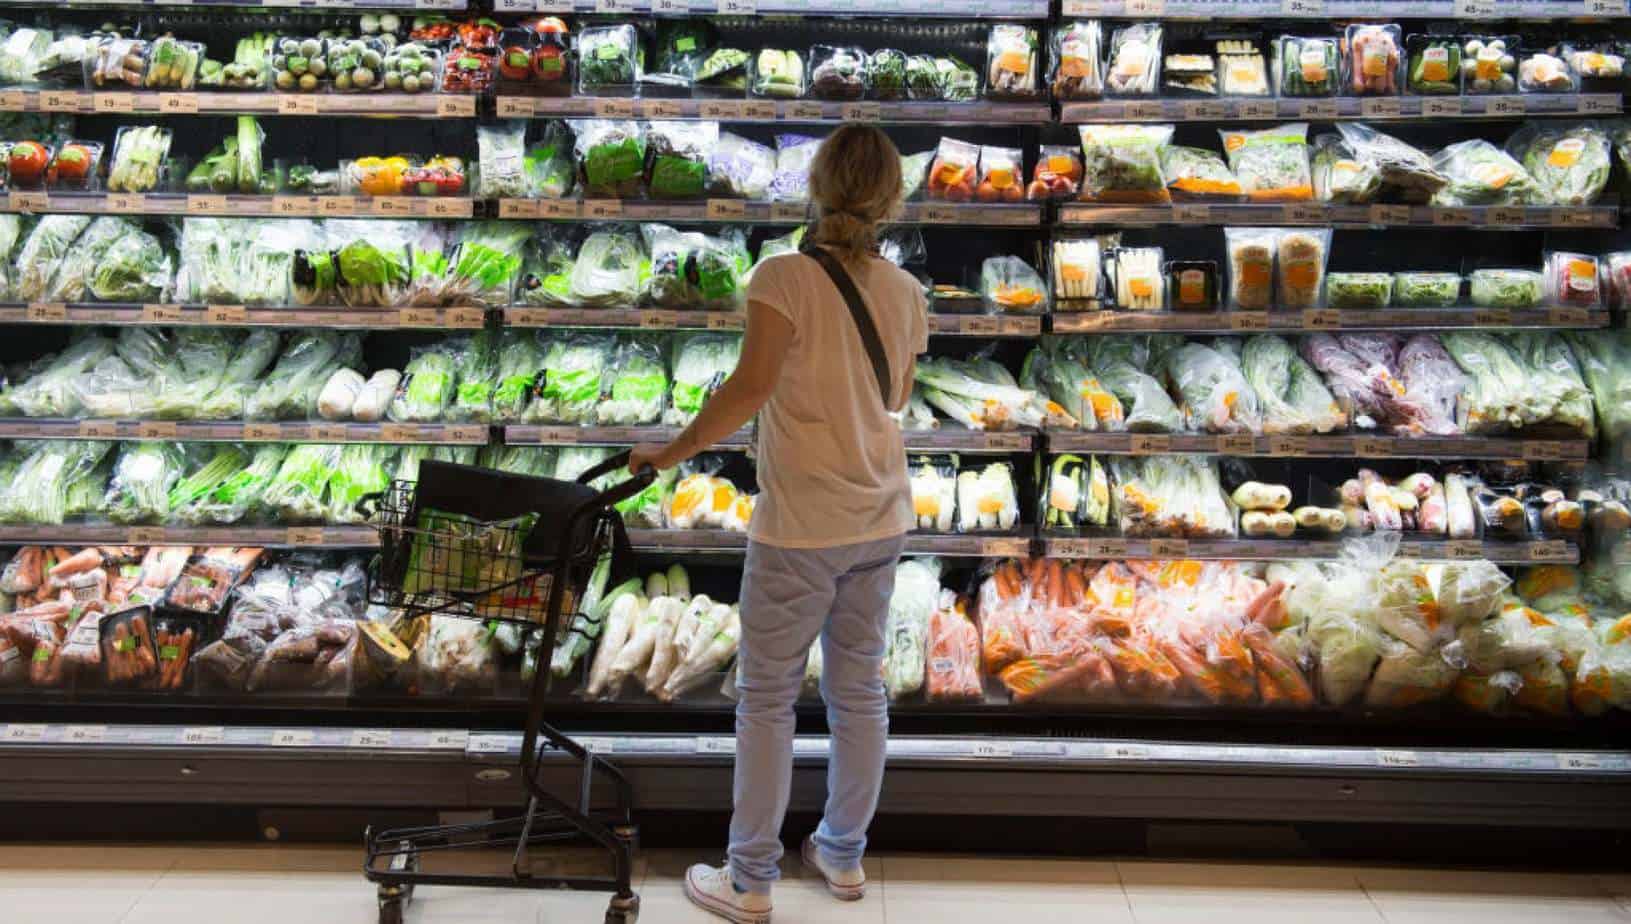 ADDIO PLASTICA: dal 2021, plastiche monouso bandite dai supermercati della Grande distribuzione